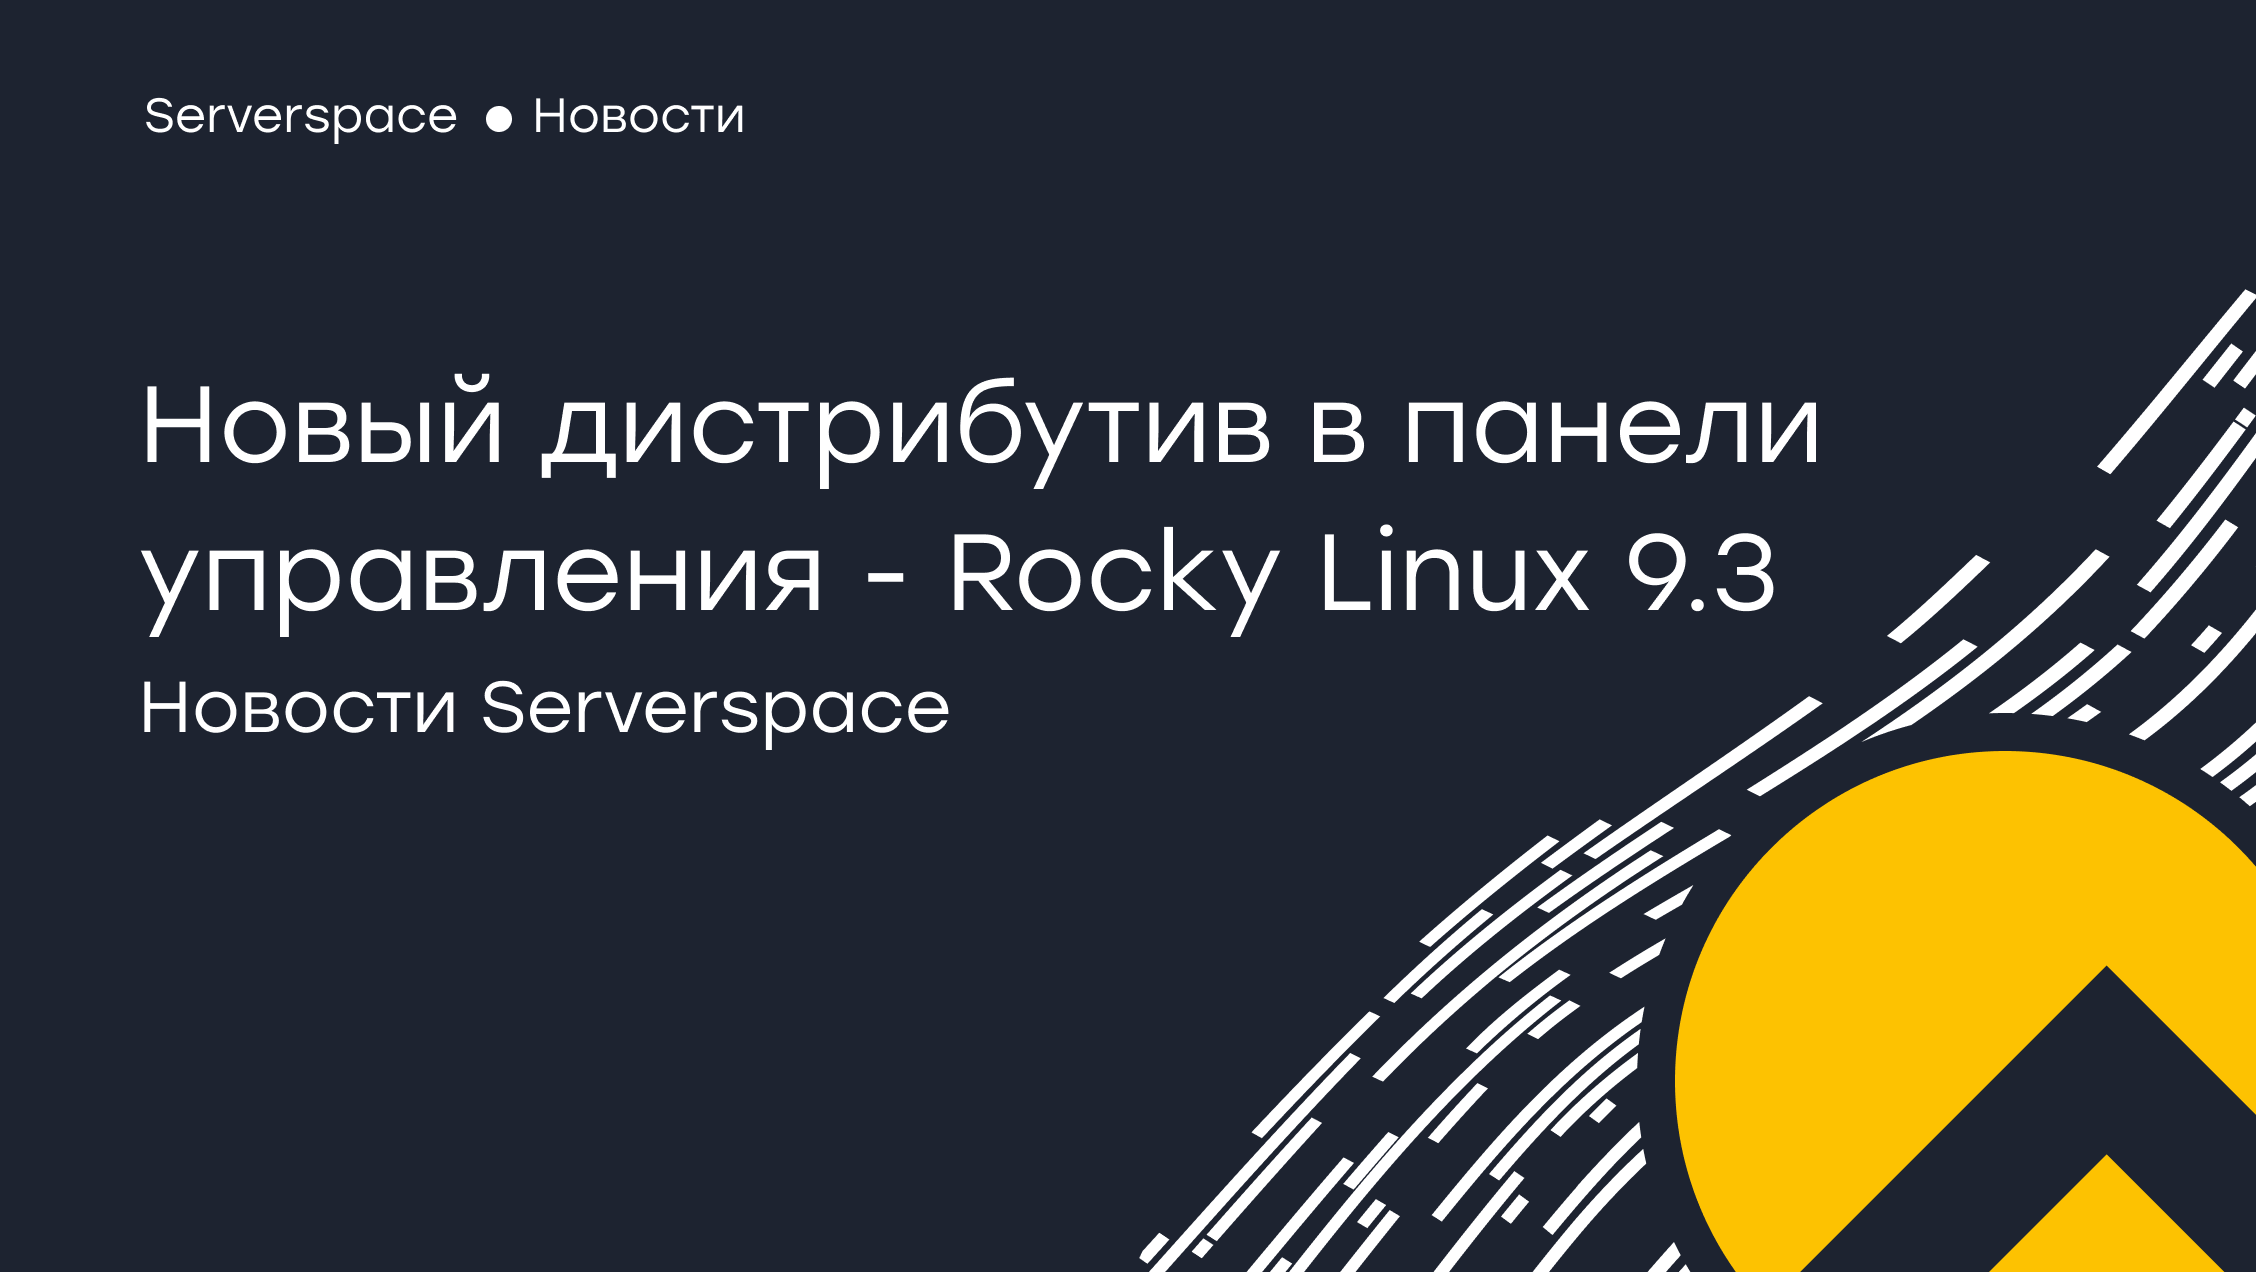 Serverspace yeni Rocky Linux 9.3 dağıtımı için destek ekledi